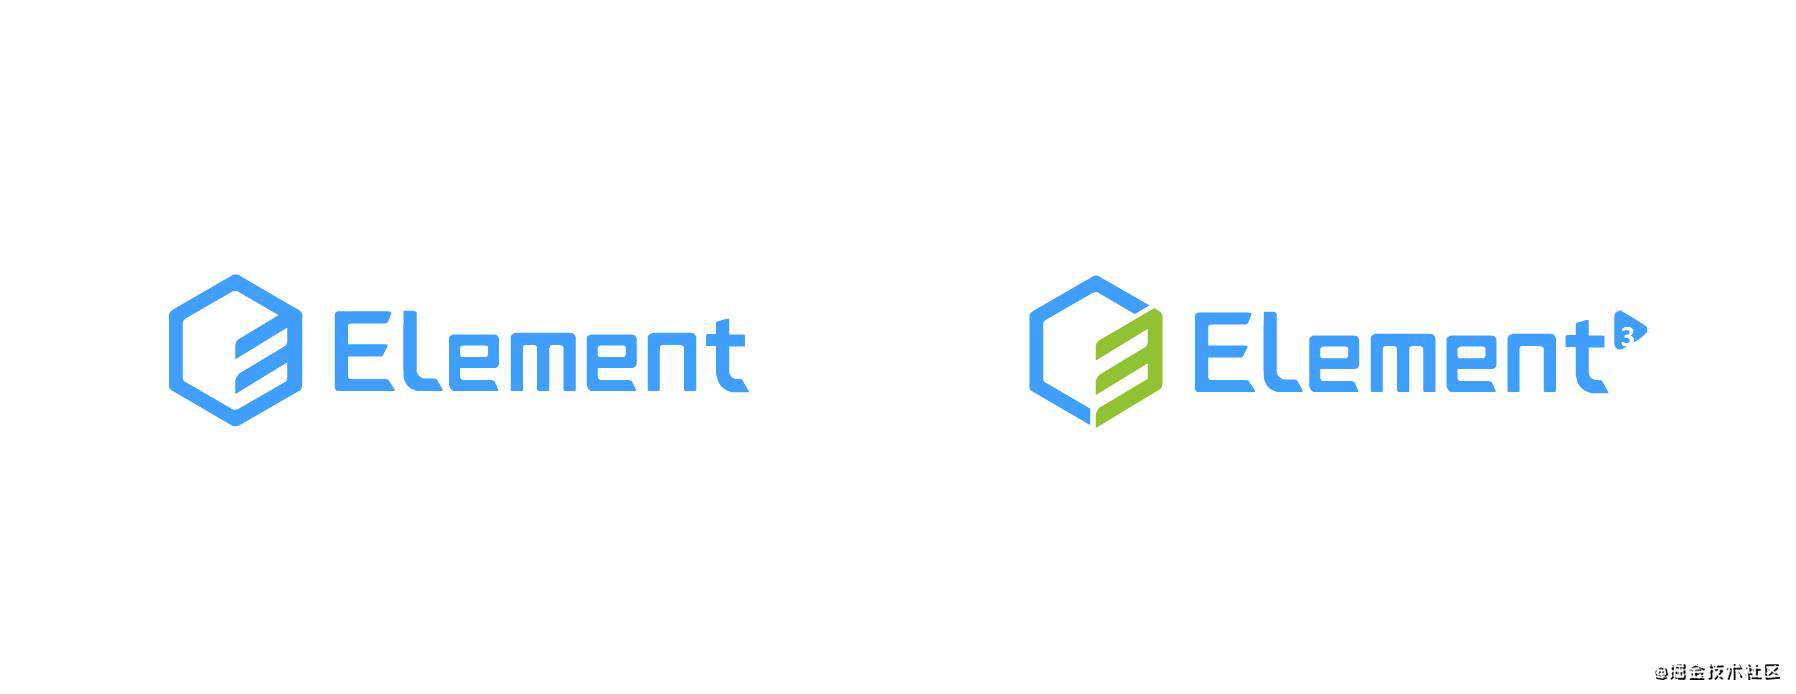 Element3 Logo是如何被设计出来的